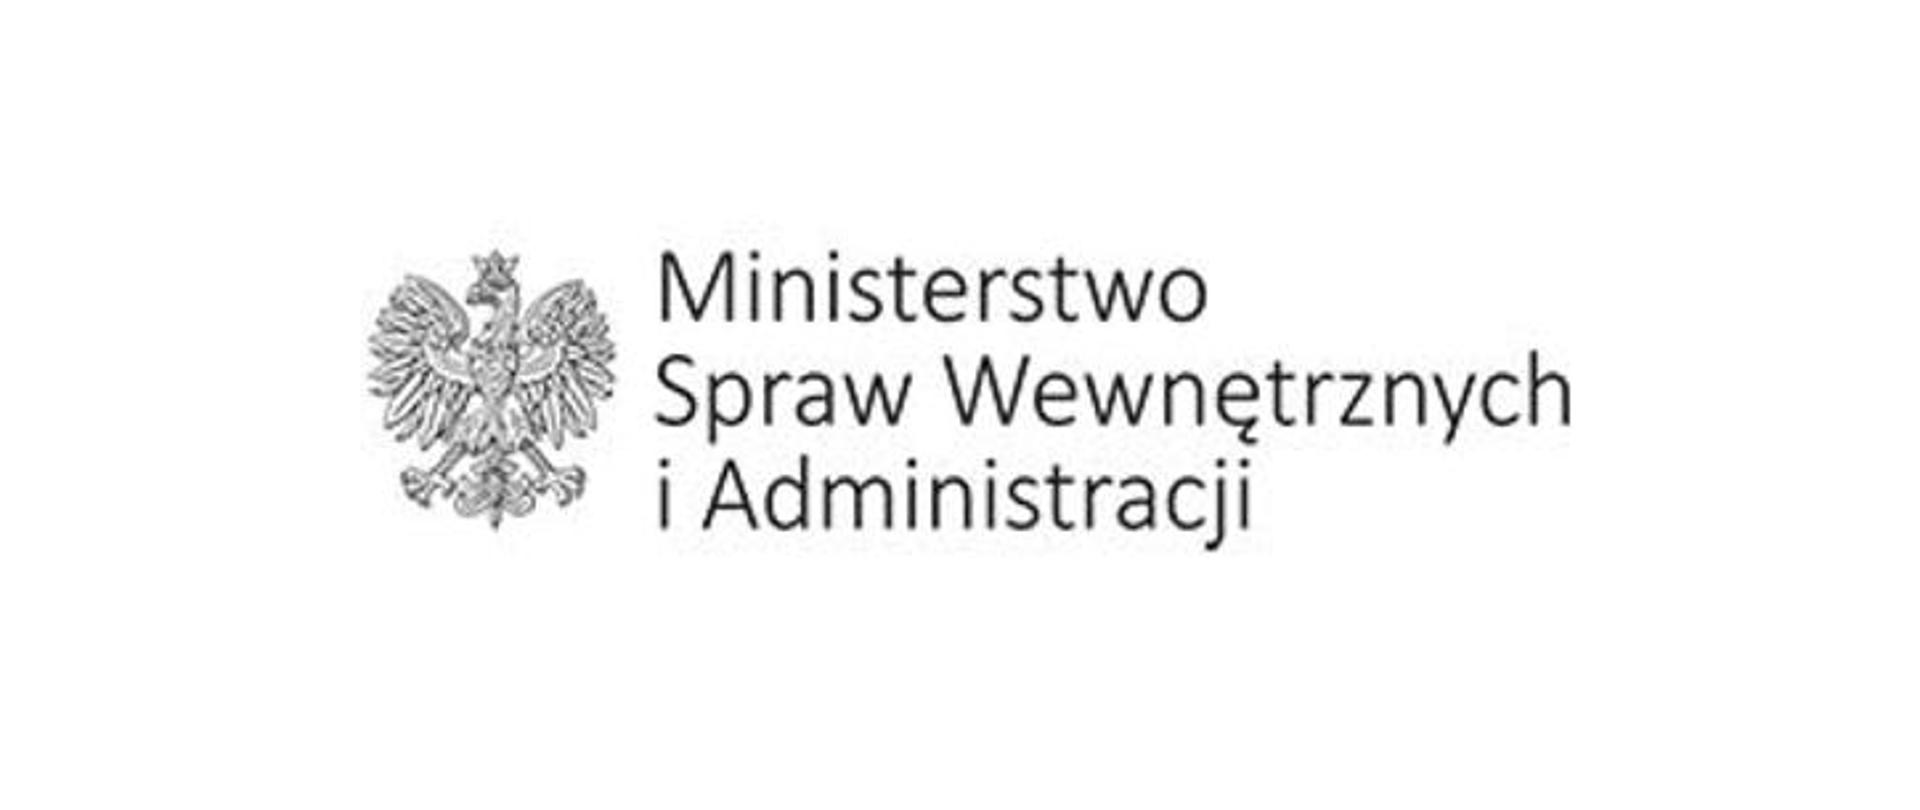 Zdjęcie przedstawia białego orła w koronie znajdującego się w godle Polski. Po prawej stronie orła znajduje się czarny napis Ministerstwo Spraw Wewnętrznych i Administracji